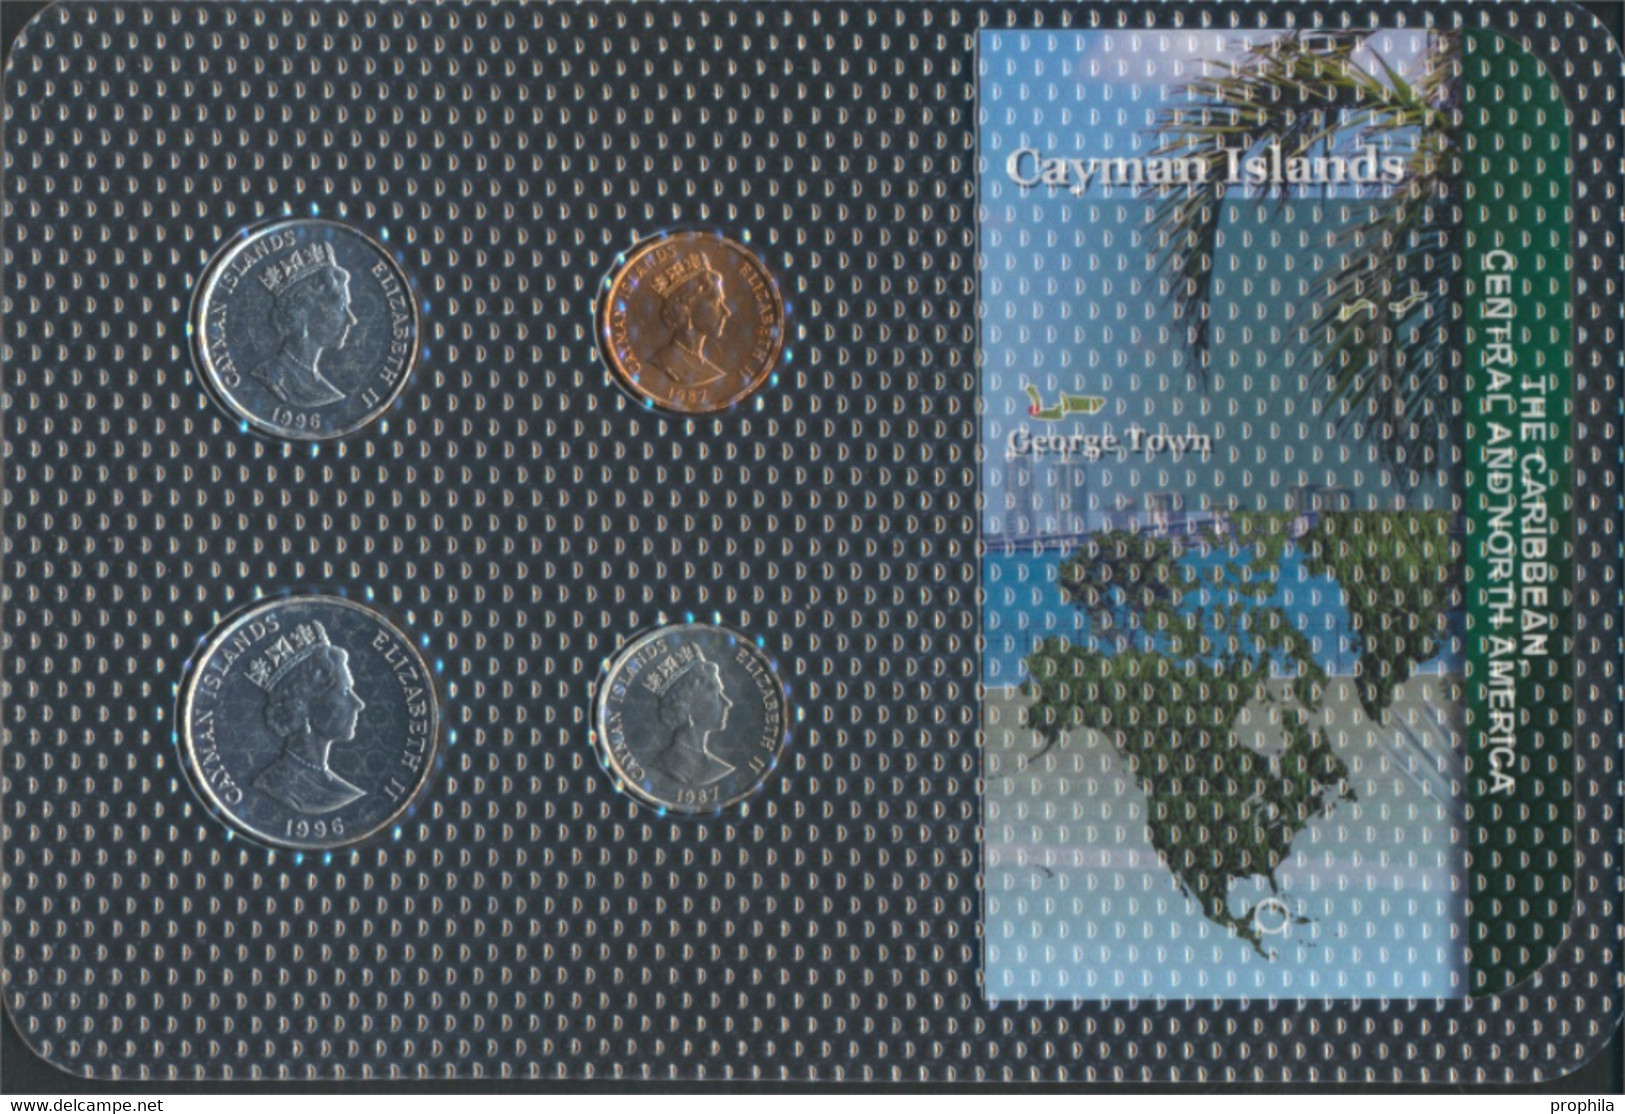 Kaimaninseln Stgl./unzirkuliert Kursmünzen Stgl./unzirkuliert Ab 1987 1 Cent Bis 25 Cents (9648528 - Cayman Islands